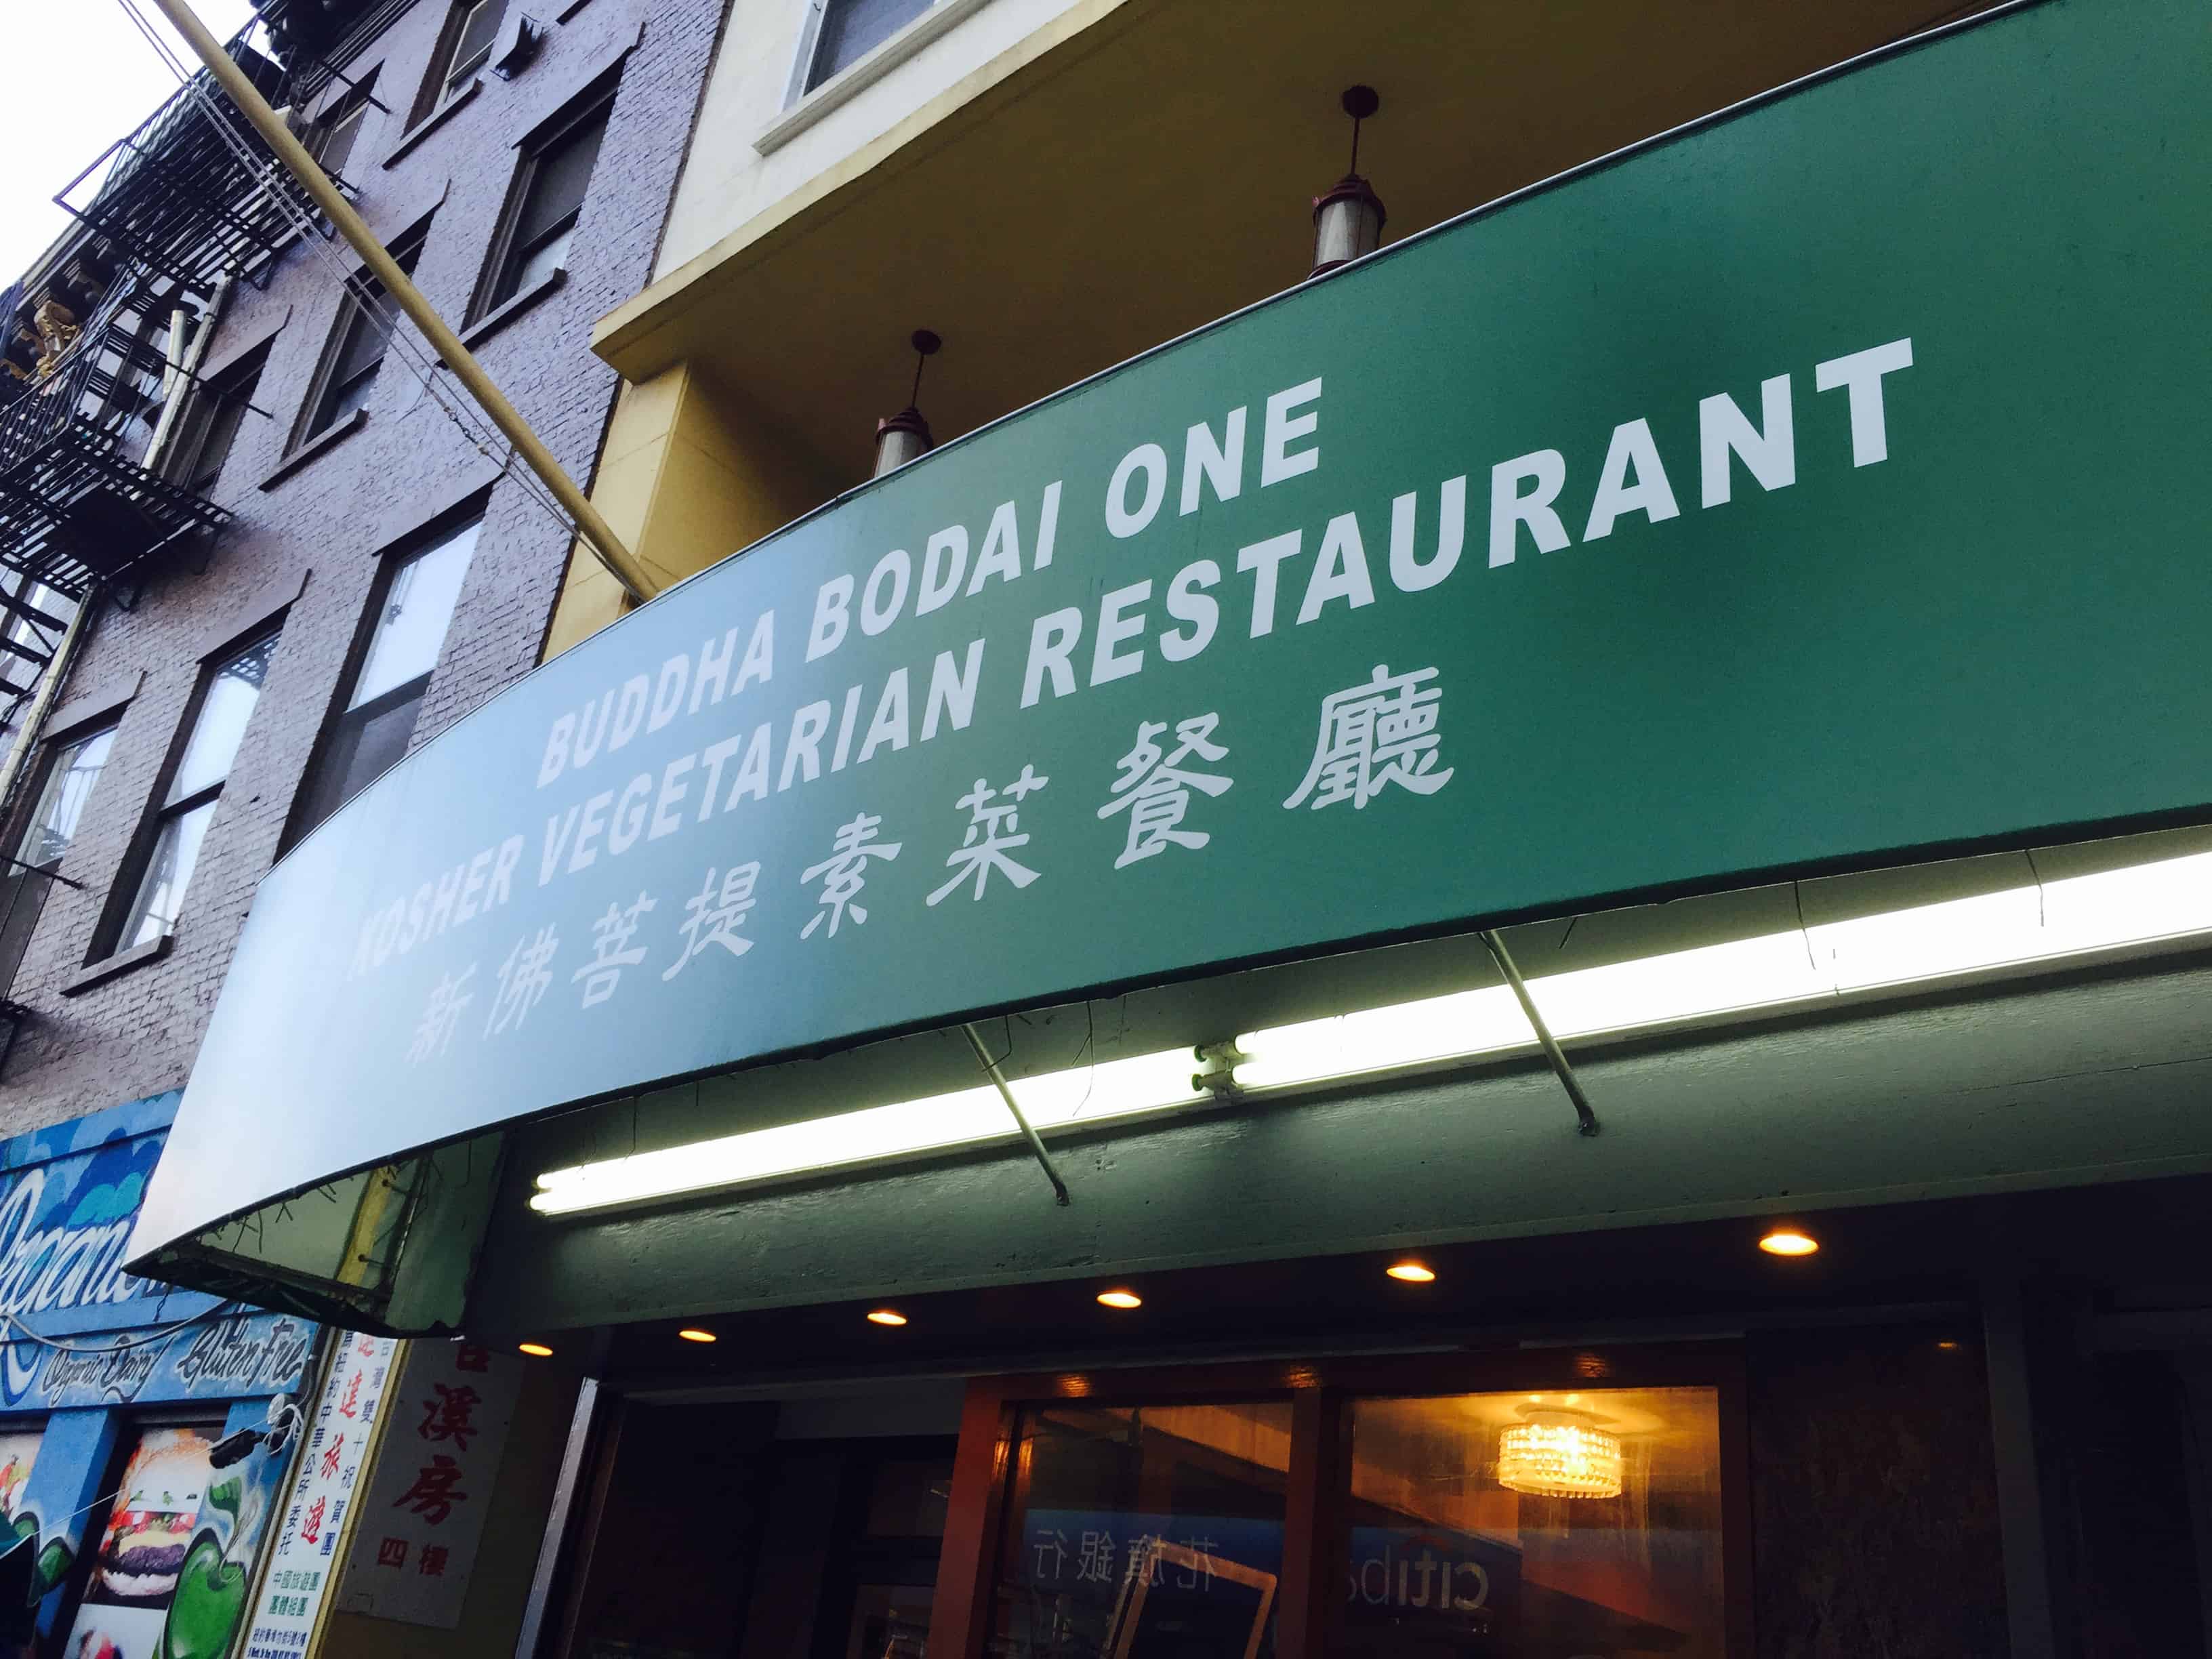 nyclife.io Original-Buddha-Bodai-One-Kosher-vegetarian-restaurant-chinatown-nyc